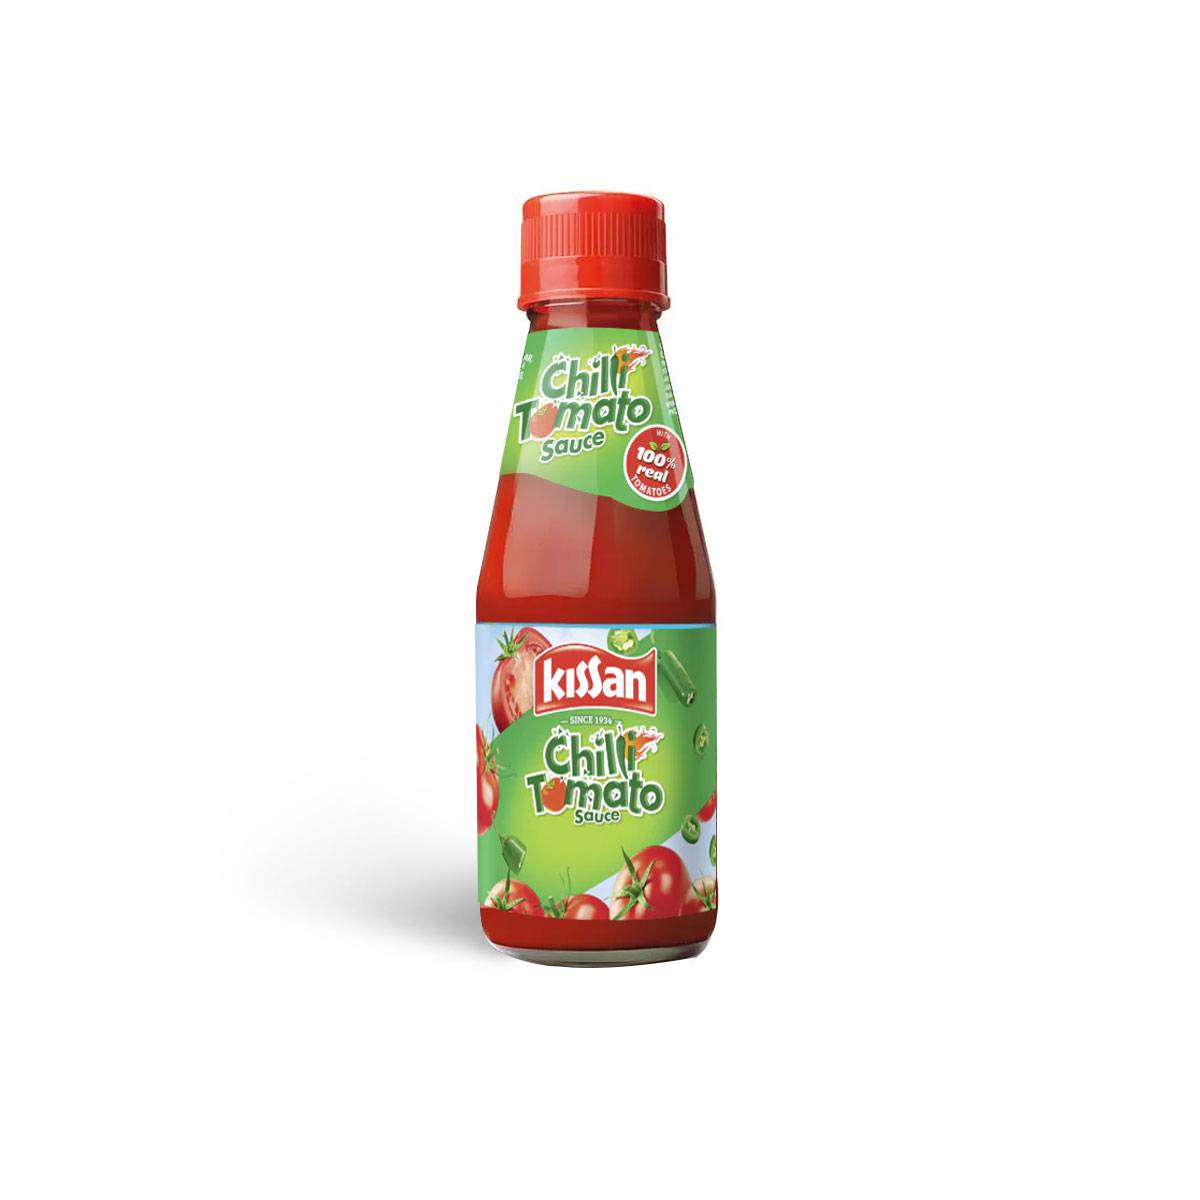 Kissan Chilli Tomato Sauce 200g